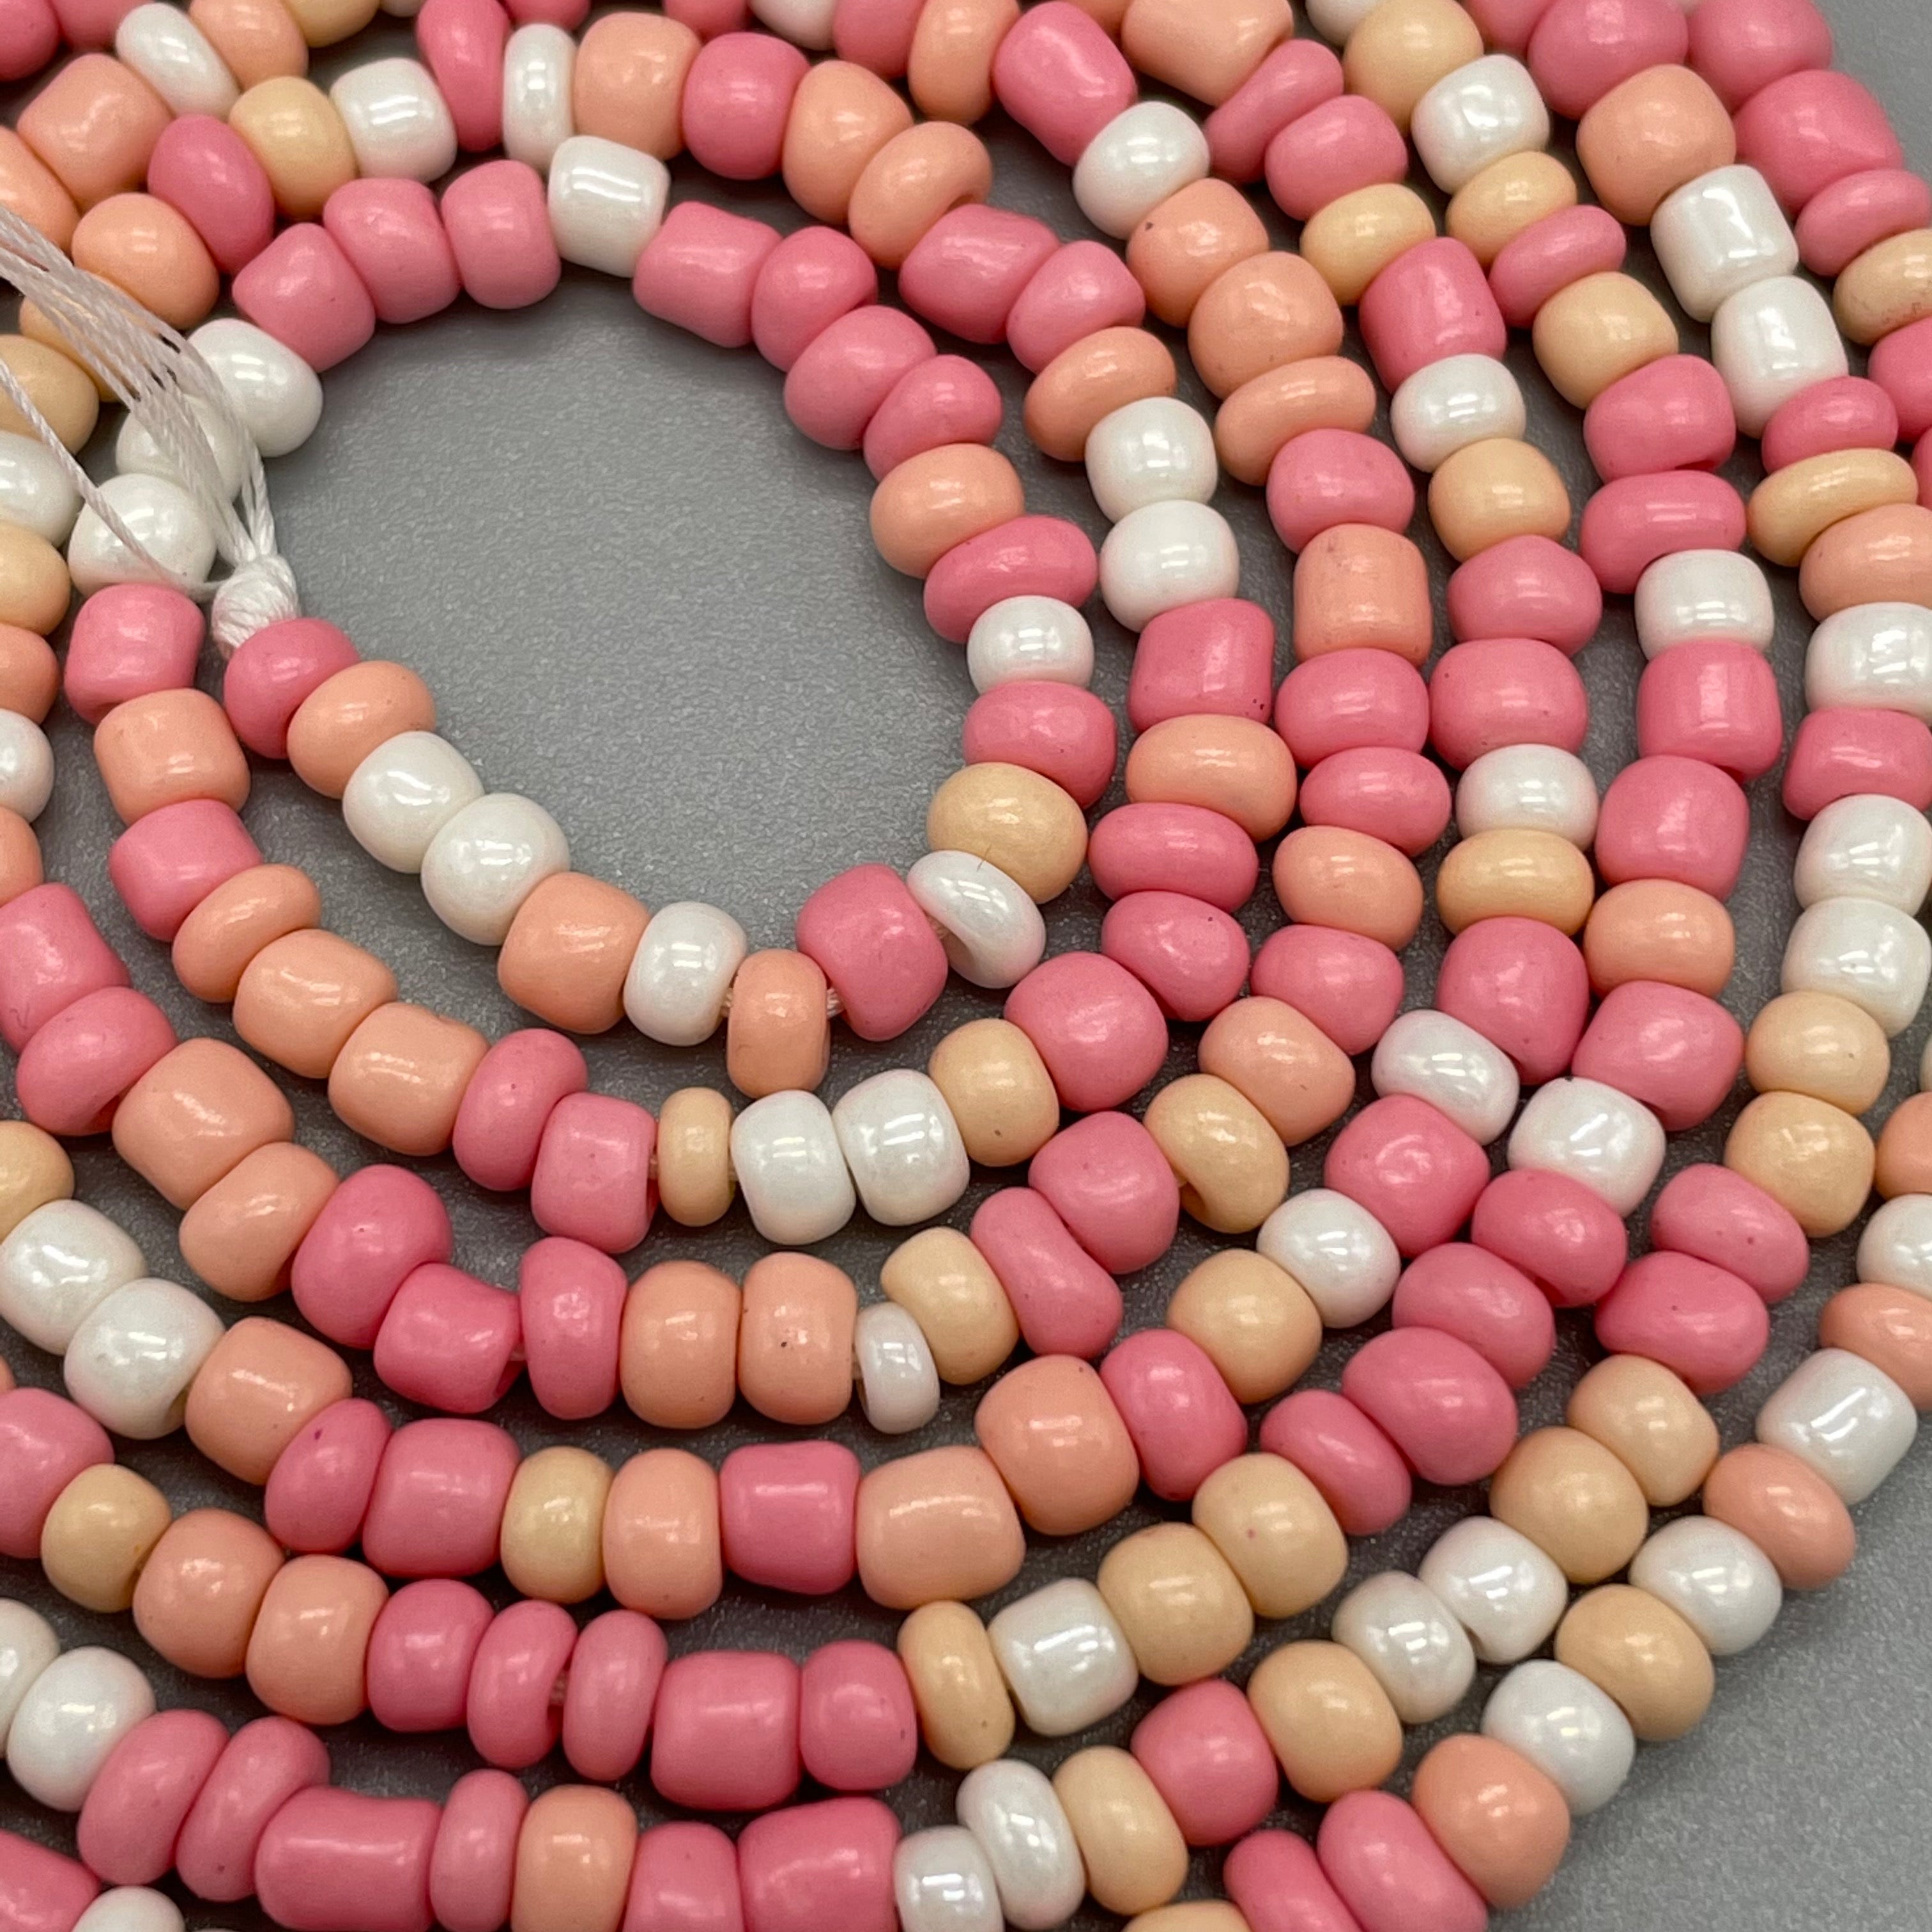 PINK Waist Beads